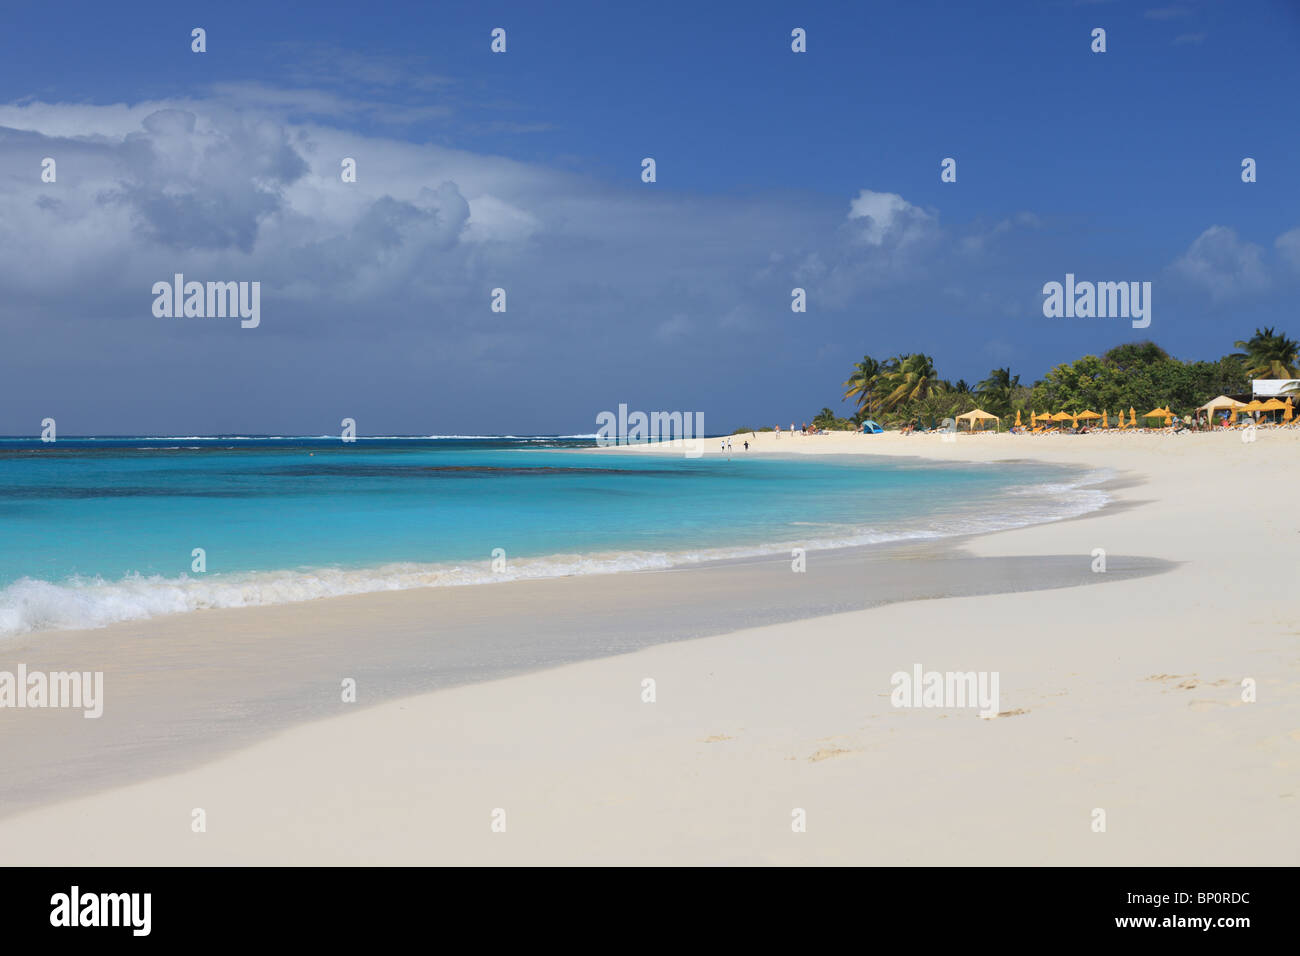 Plage de sable propre déserte sur Anguilla, Caraïbes Banque D'Images